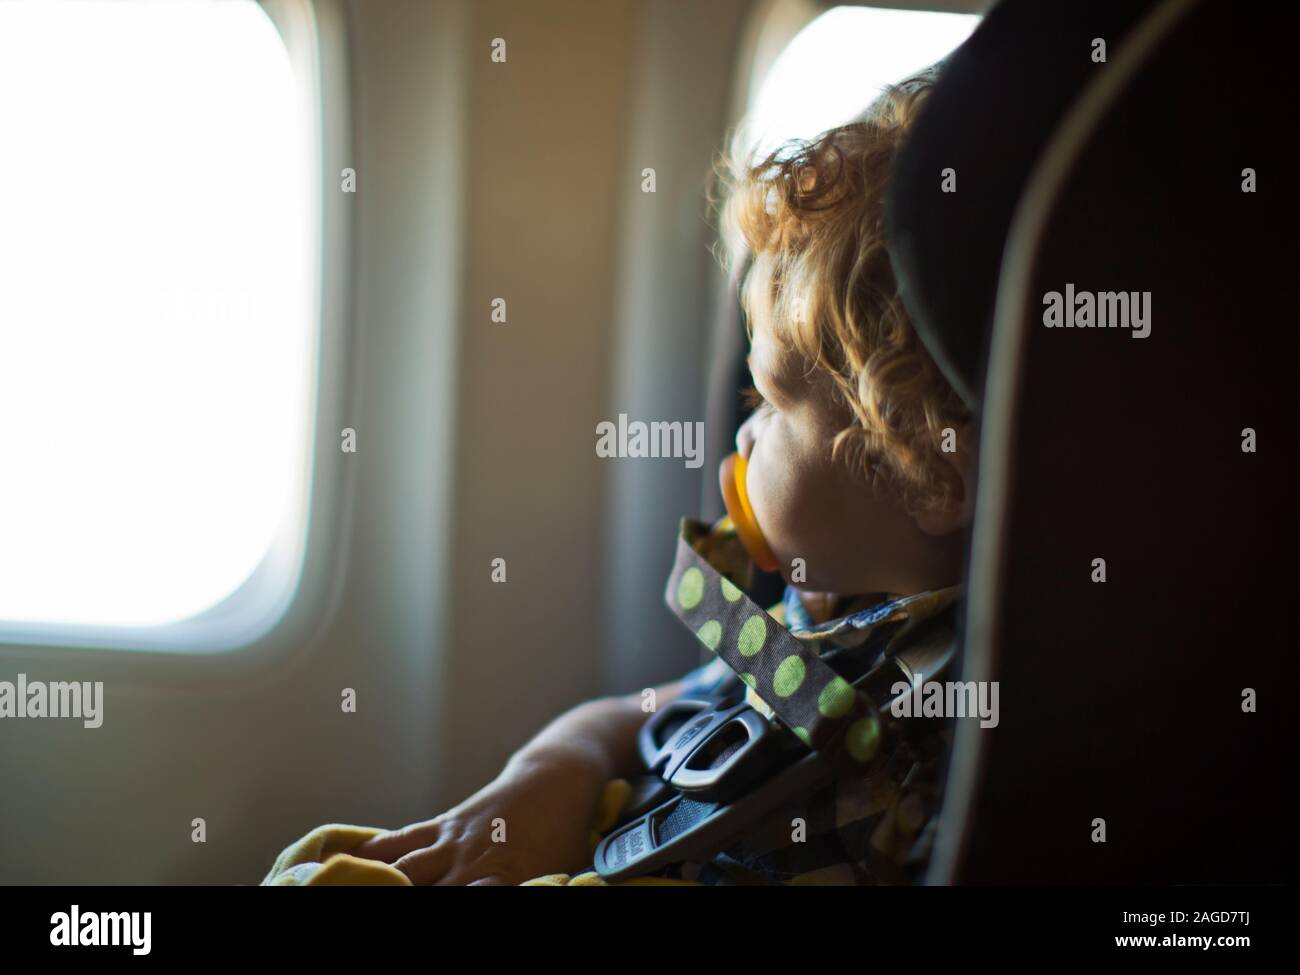 Junge in einem Autositz sitzen in einem Flugzeug. Stockfoto